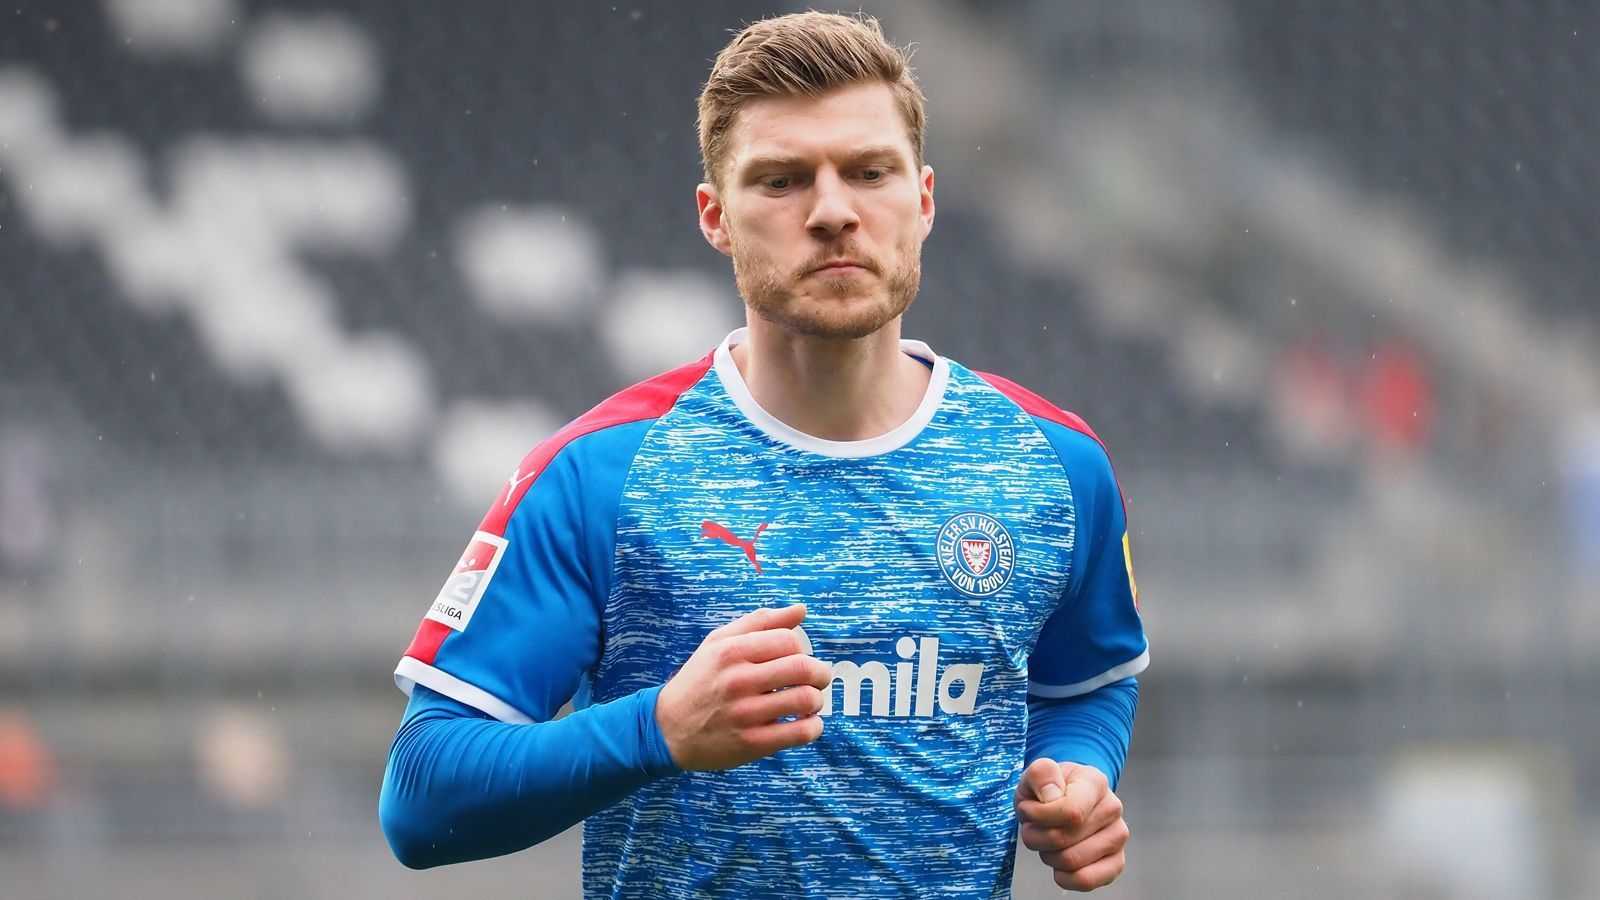 
                <strong>Alexander Mühling</strong><br>
                Mit sechs Toren ist Alexander Mühling der beste Torjäger von Holstein Kiel. Der 28-Jährige ist allerdings kein Stürmer, sondern im zentralen Mittelfeld beheimatet. Der ehemalige deutsche U18-Nationalspieler stammt aus dem Nachwuchs von Borussia Mönchengladbach, spielte danach für die zweite Mannschaft von Bayer 04 Leverkusen und für den SV Sandhausen. 2016 wechselte er zu Holstein Kiel und stieg gleich in der ersten Saison von der 3. Liga in die 2. Bundesliga auf.   
              